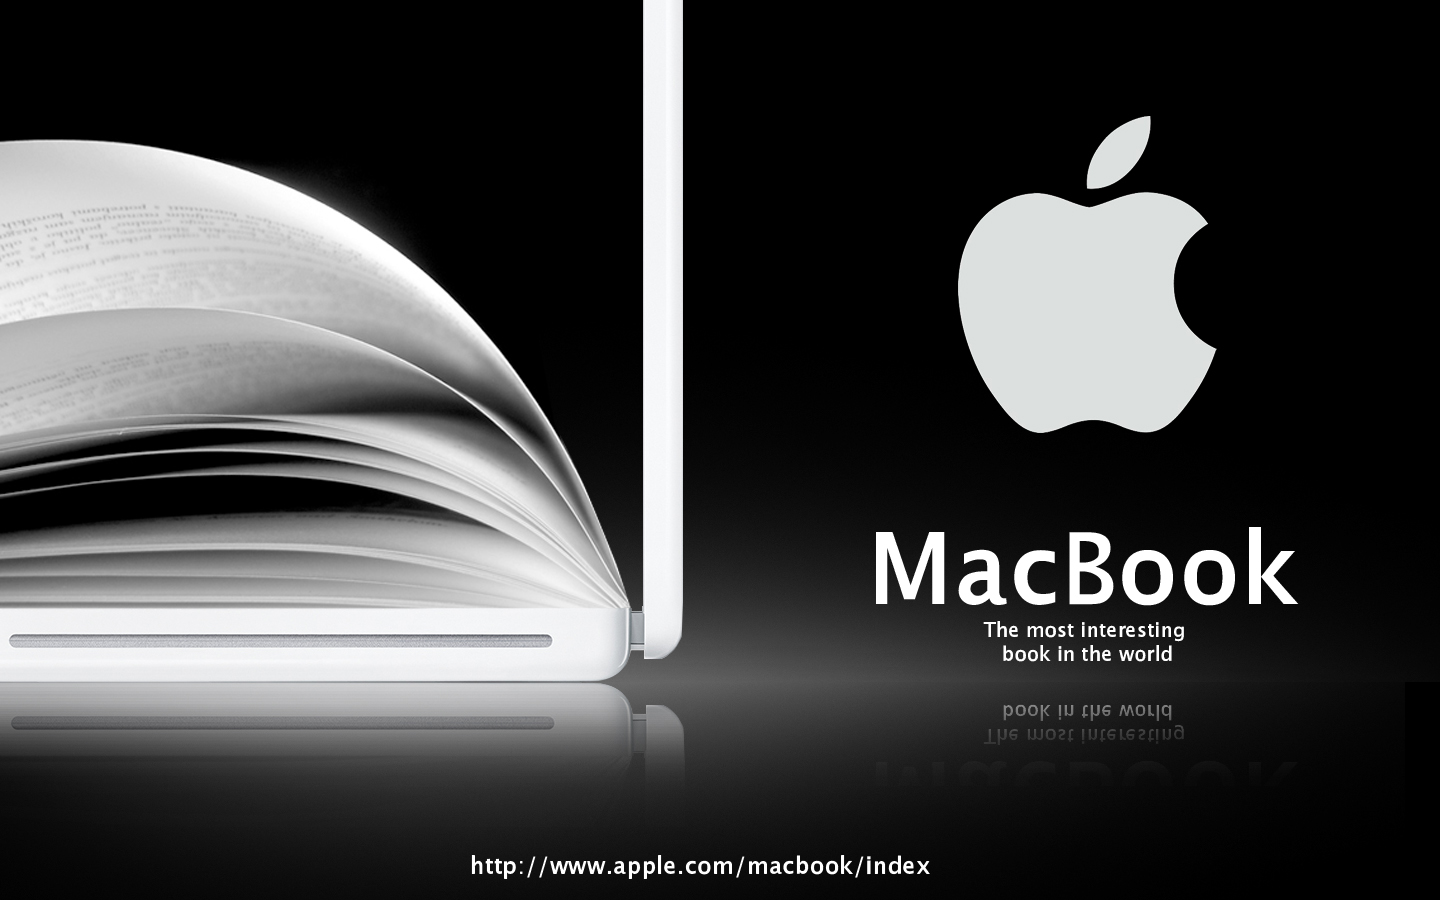 Advert for Apple Macbook